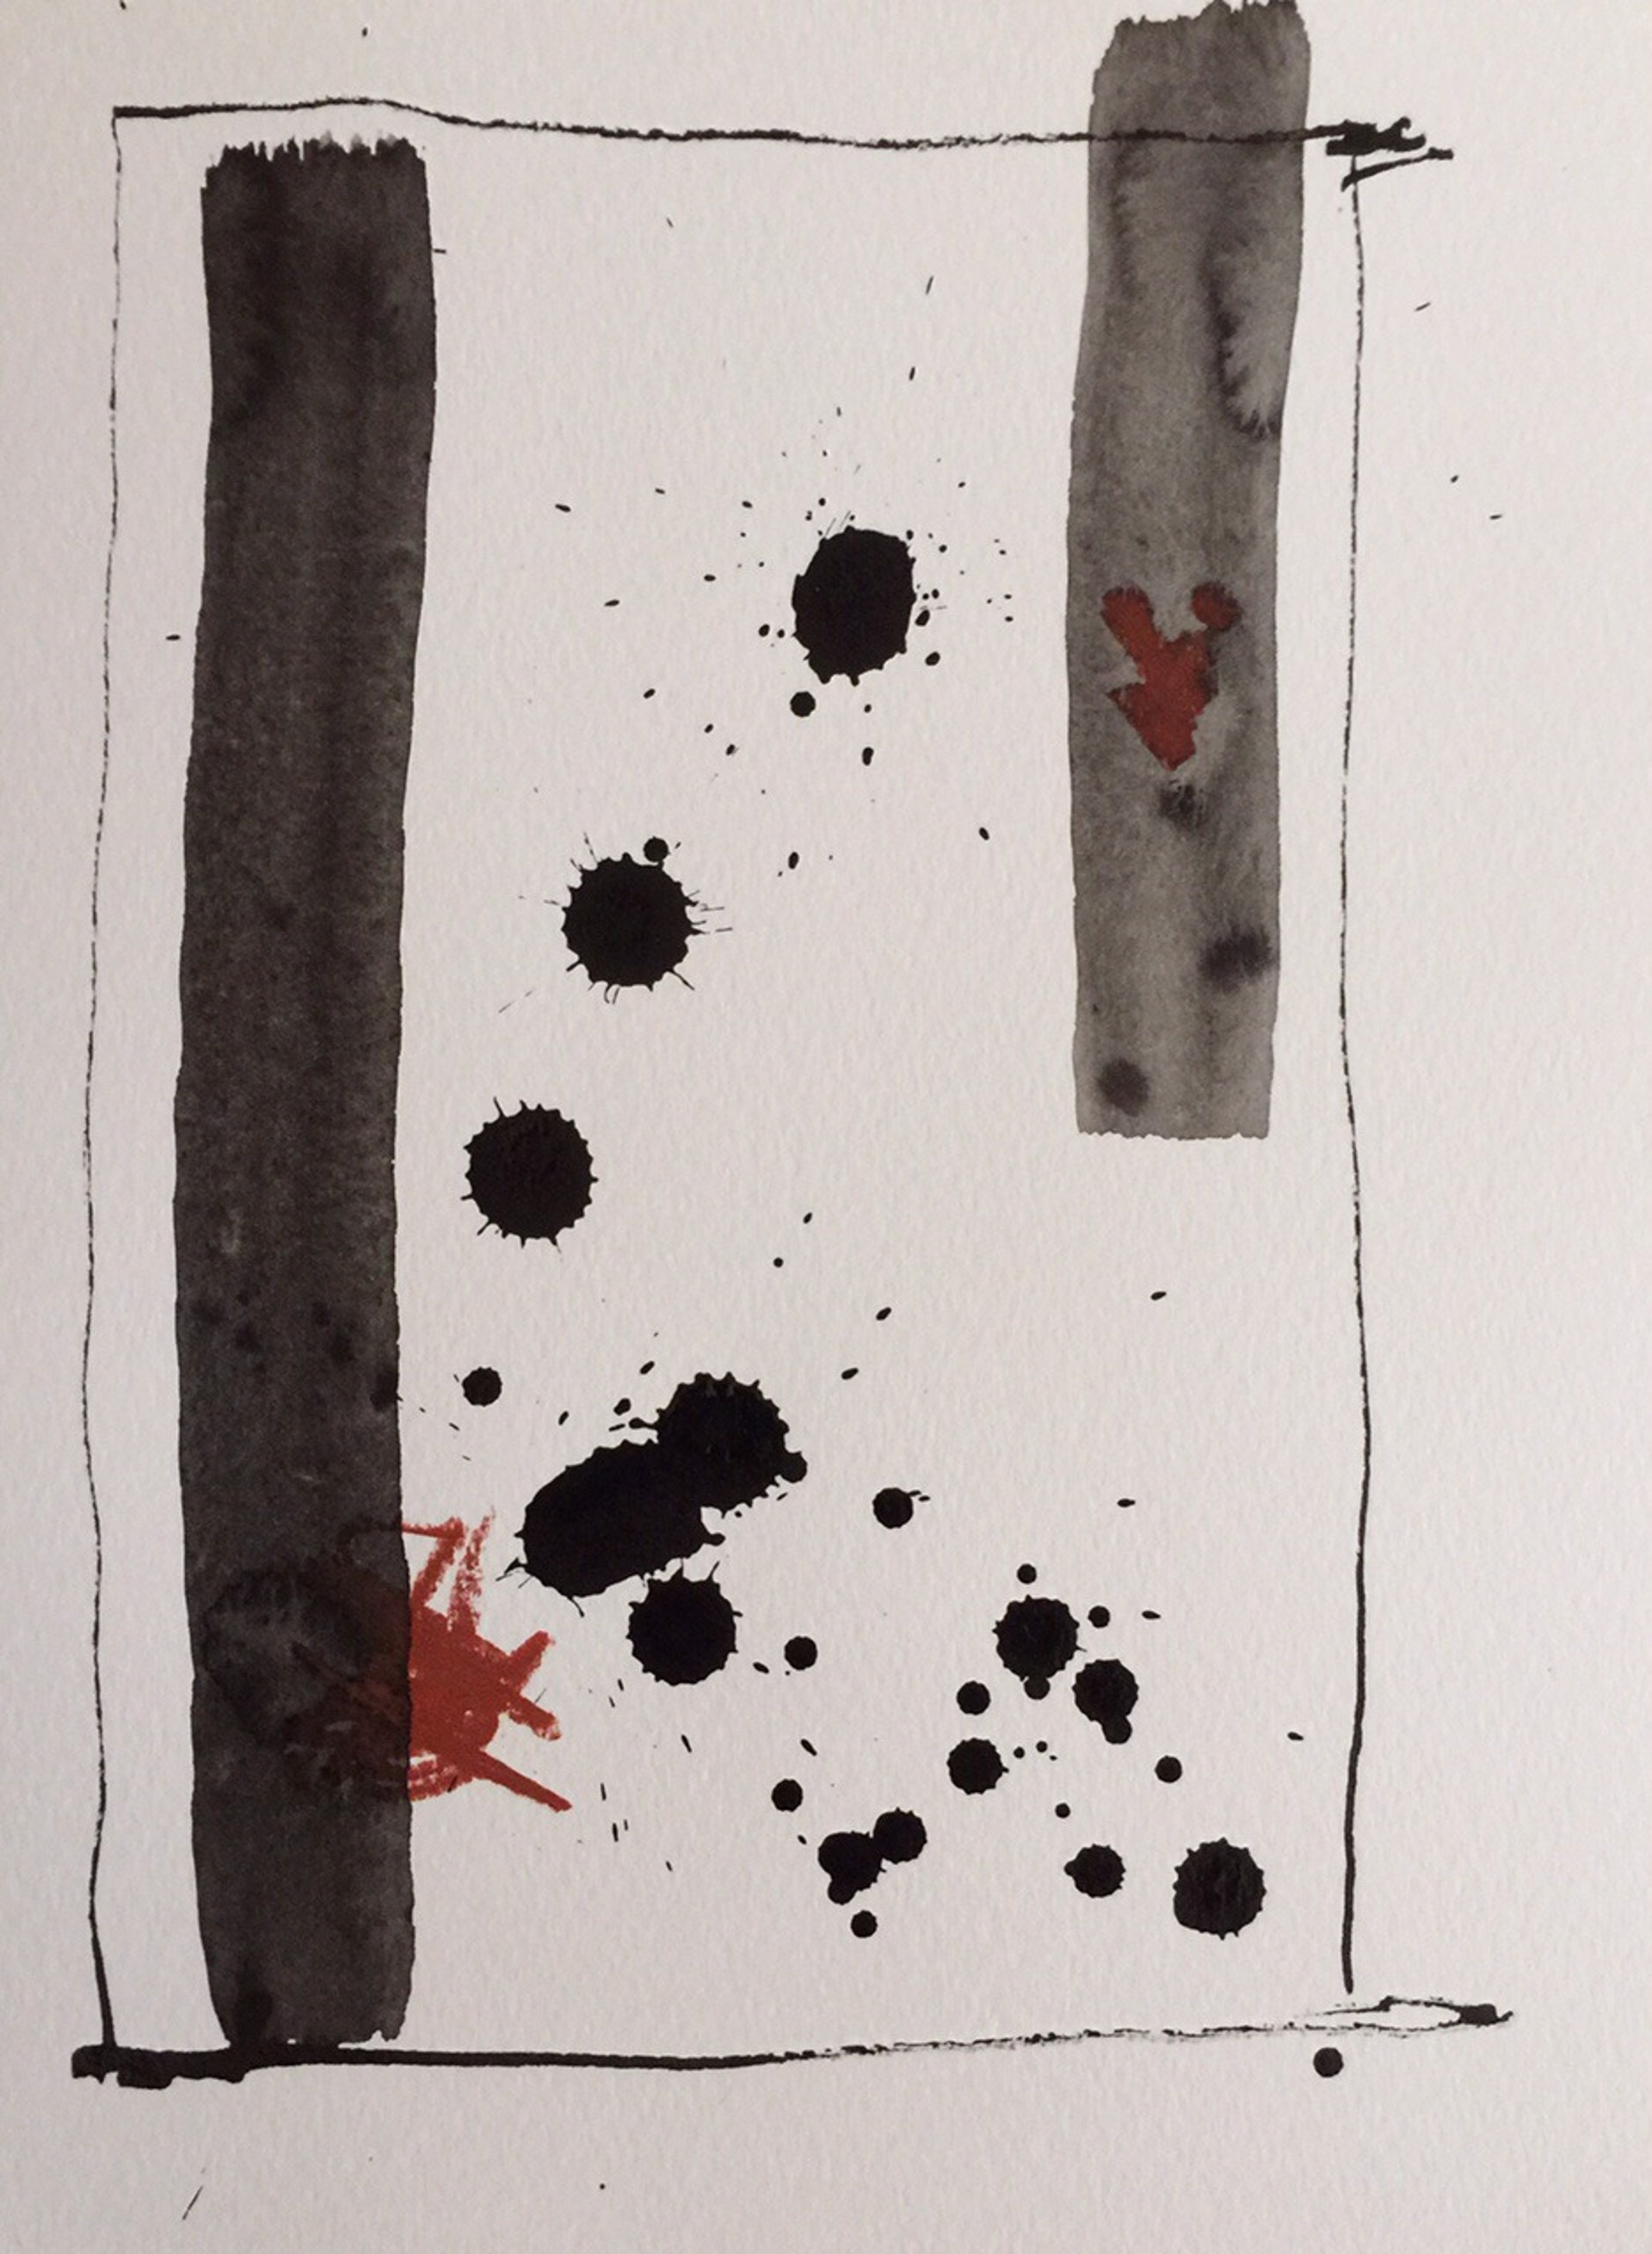 Abstract no. 4, 2015 by John Goodman